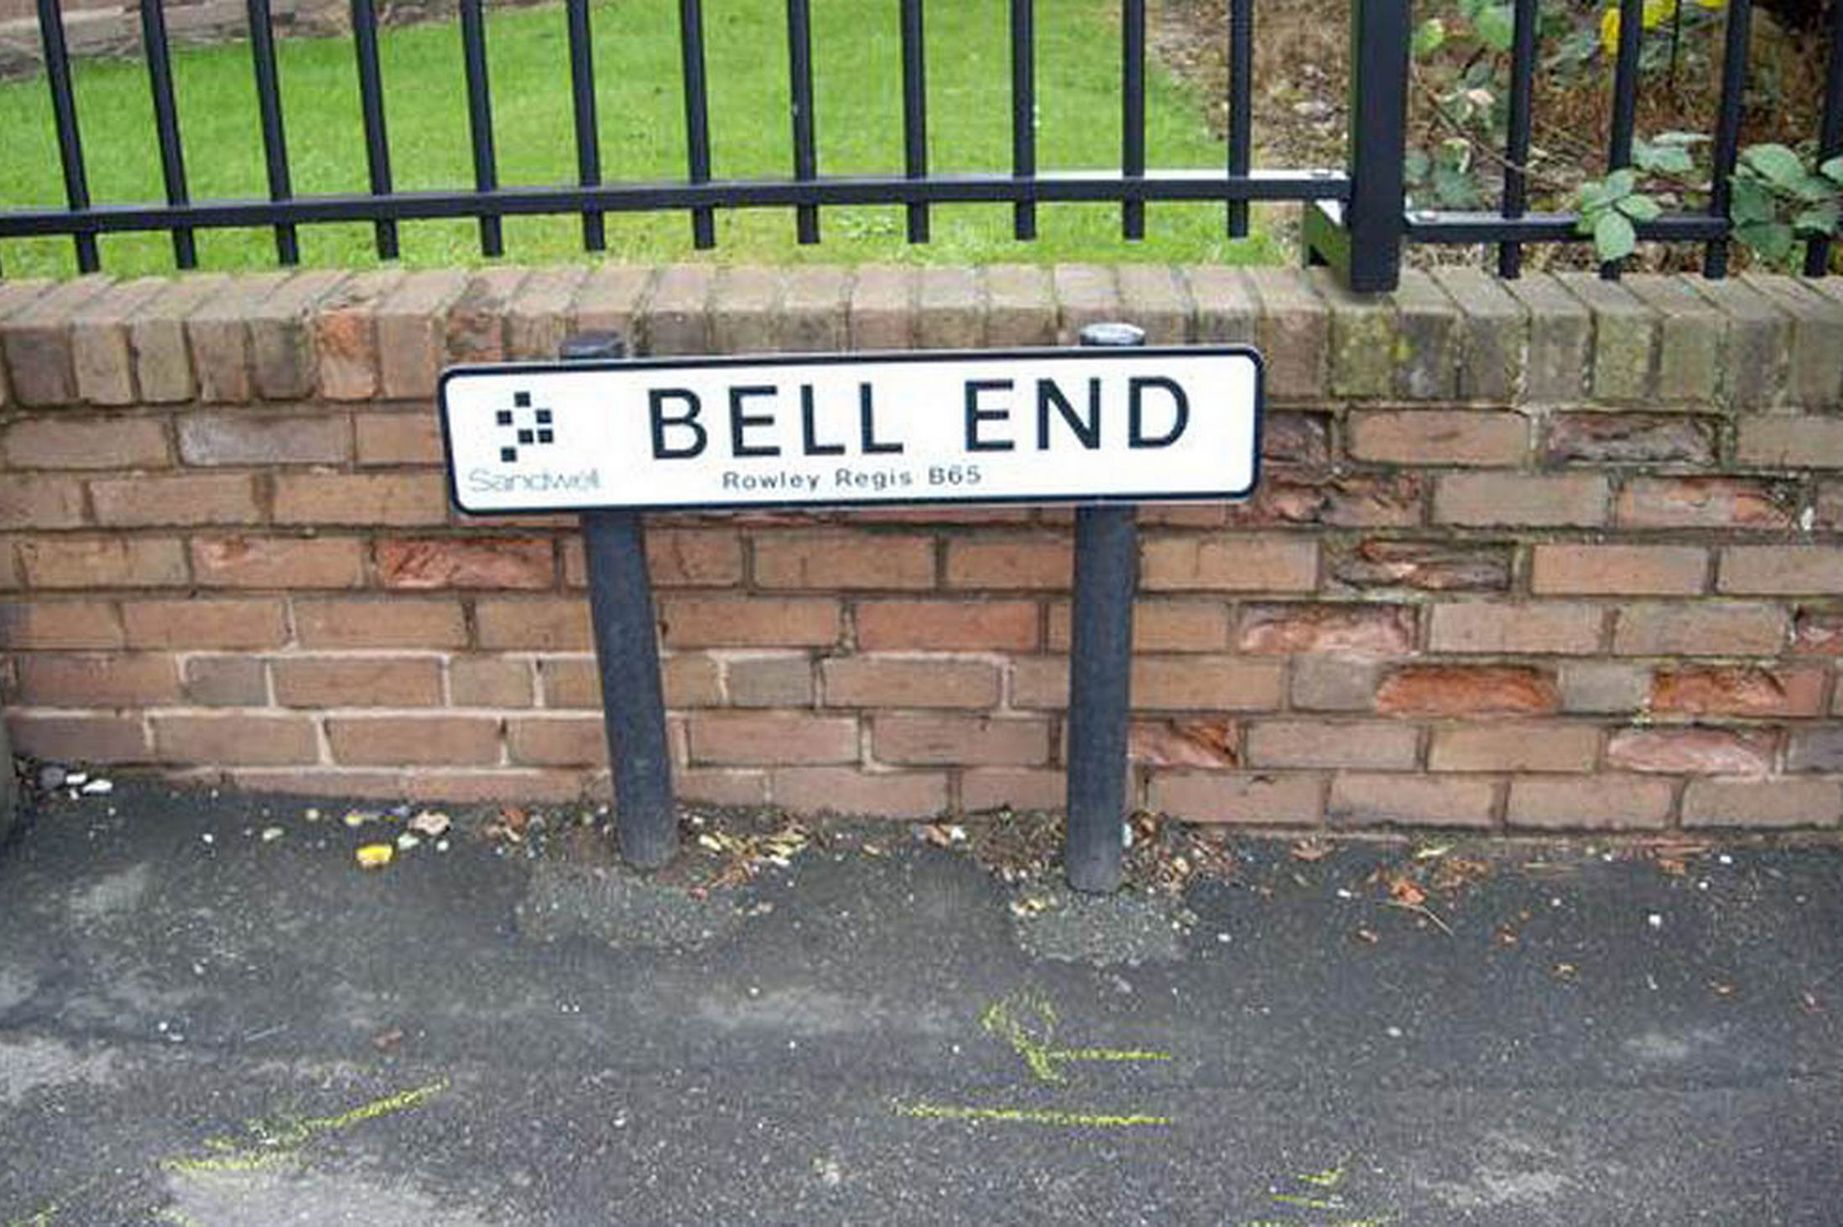 Bell-End-Rowley-Regis-3179021.jpg